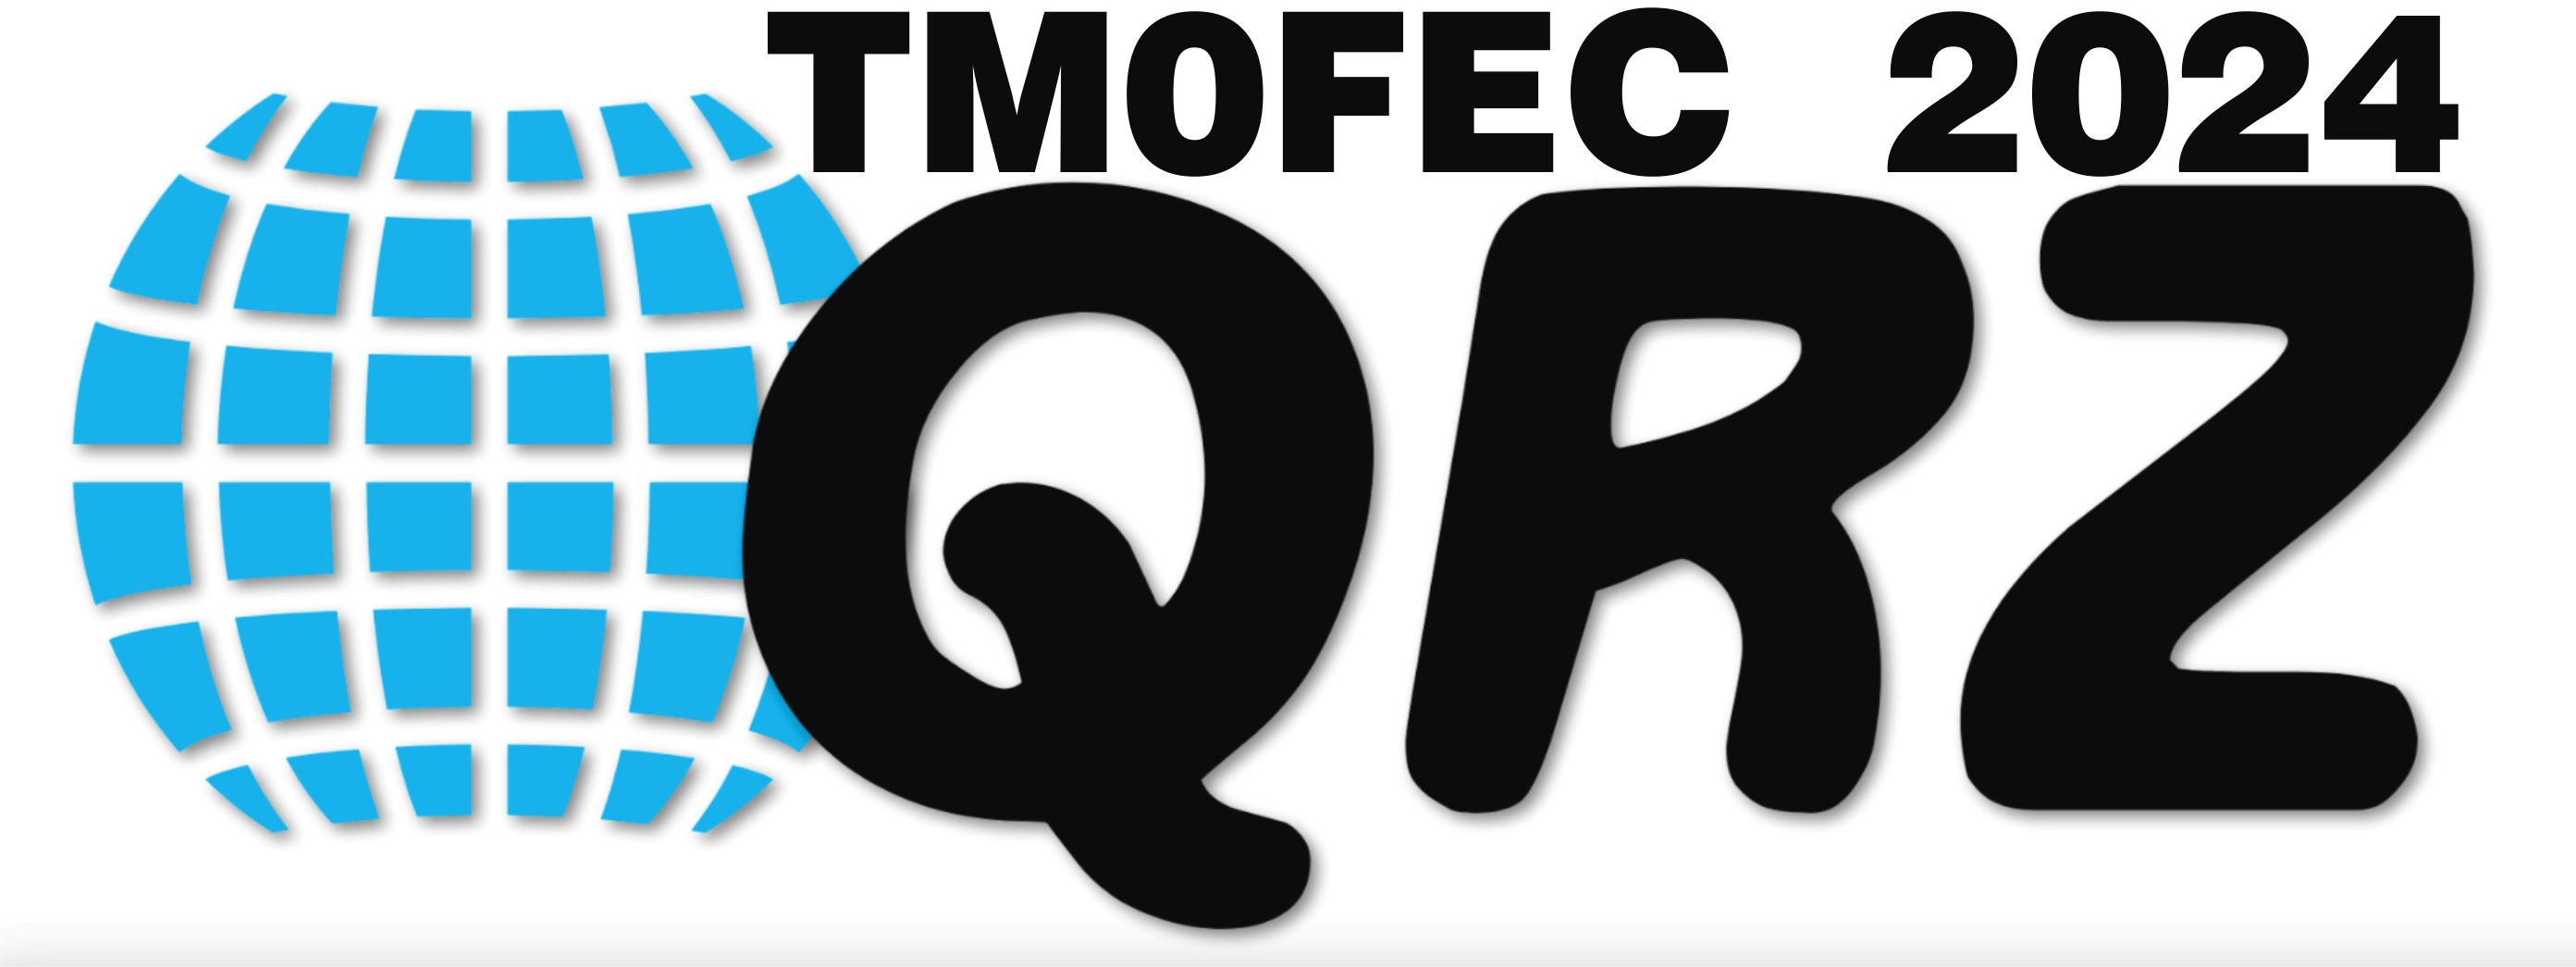 QRZ-TM0FEC.jpg